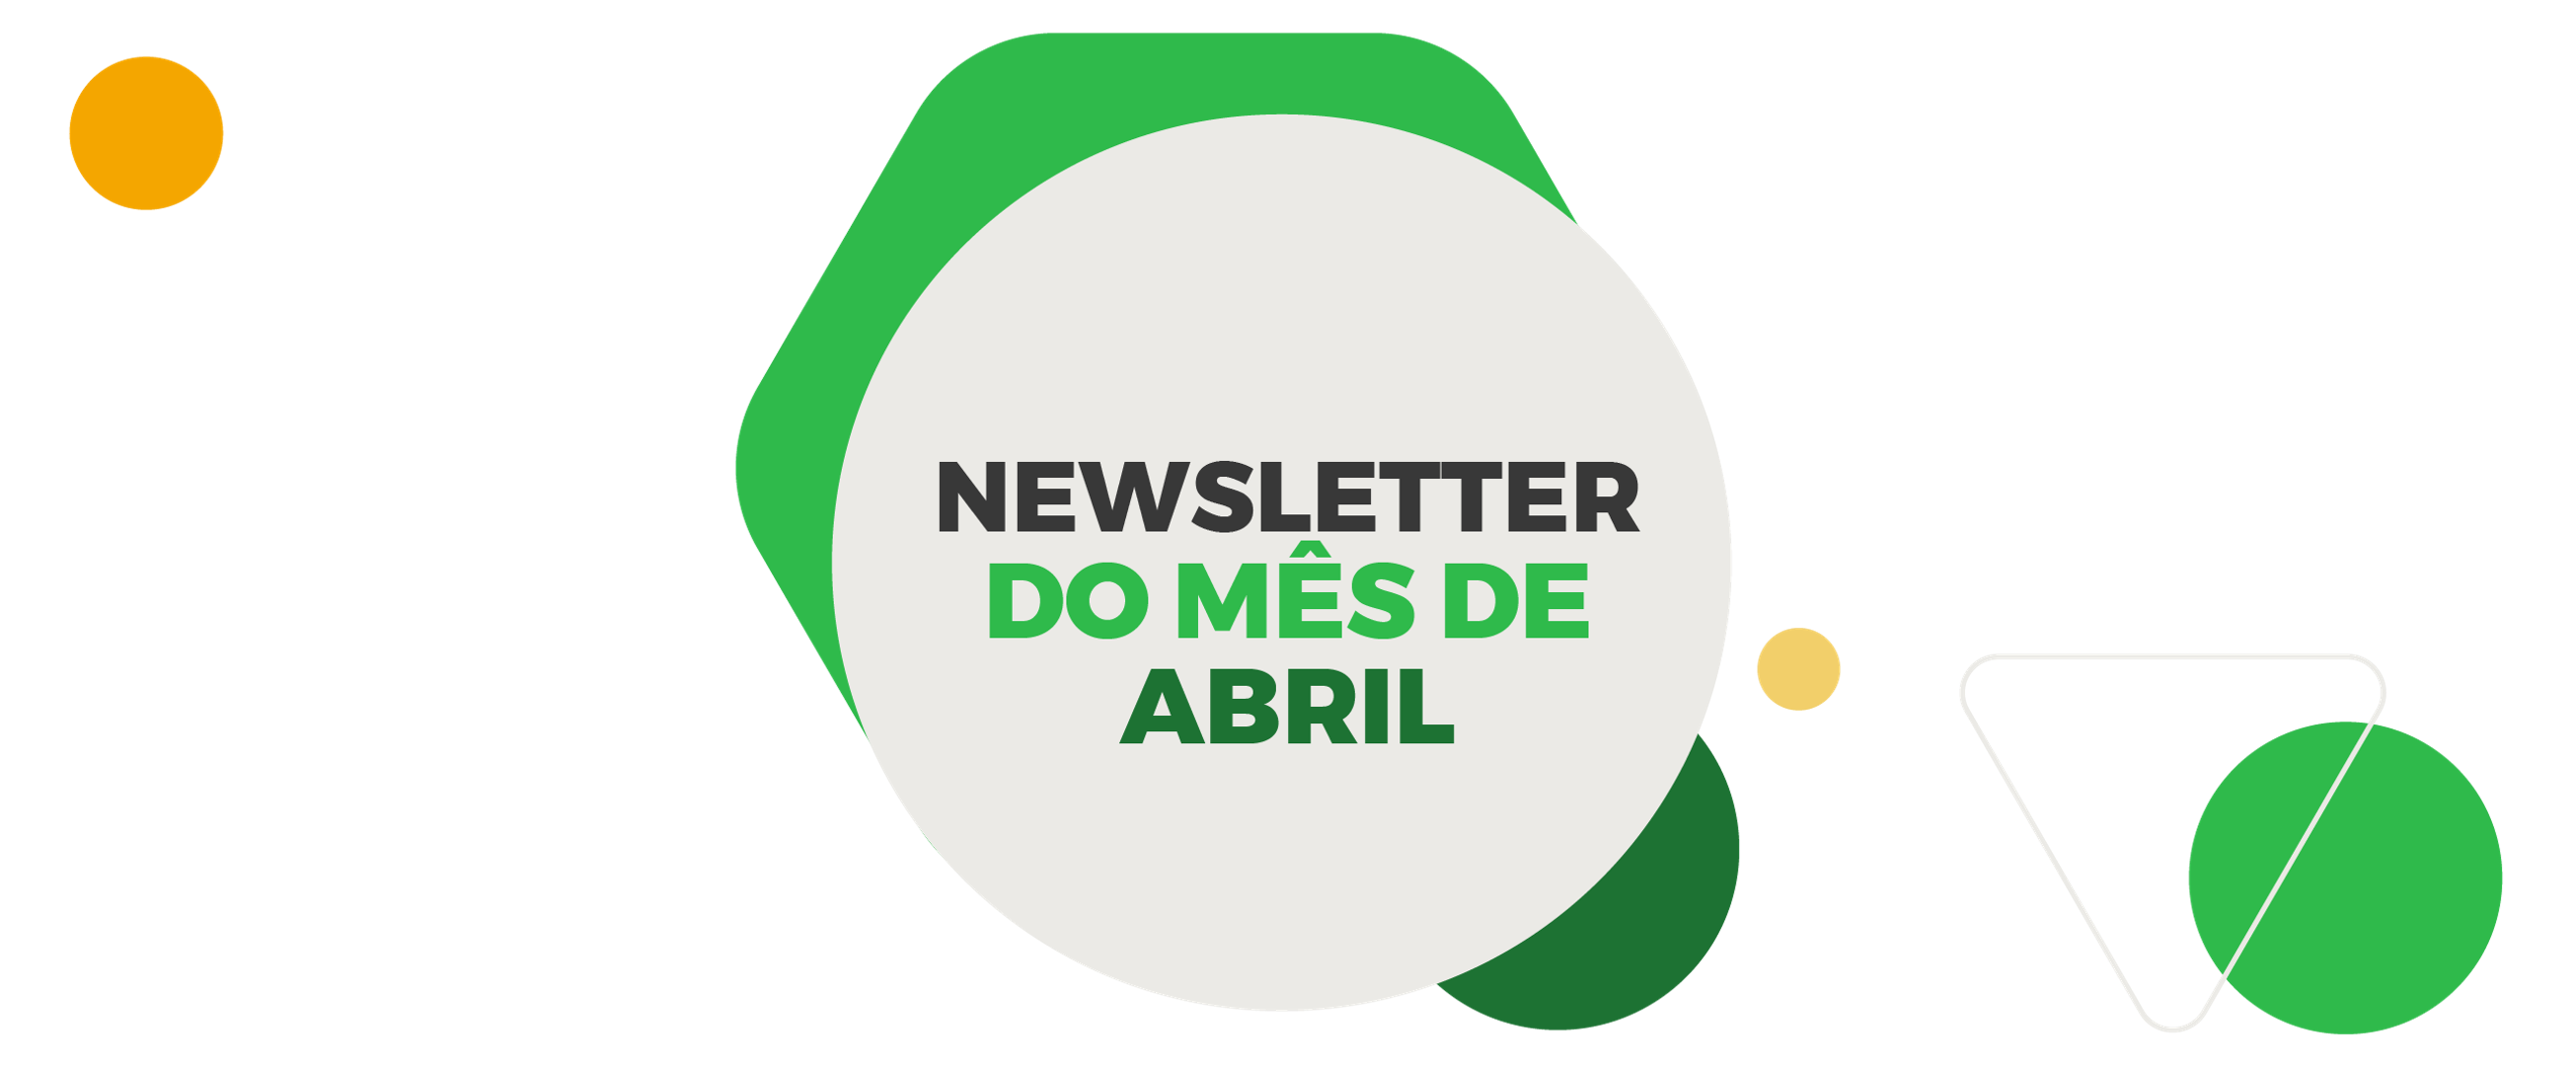 Newsletters mês de Abril